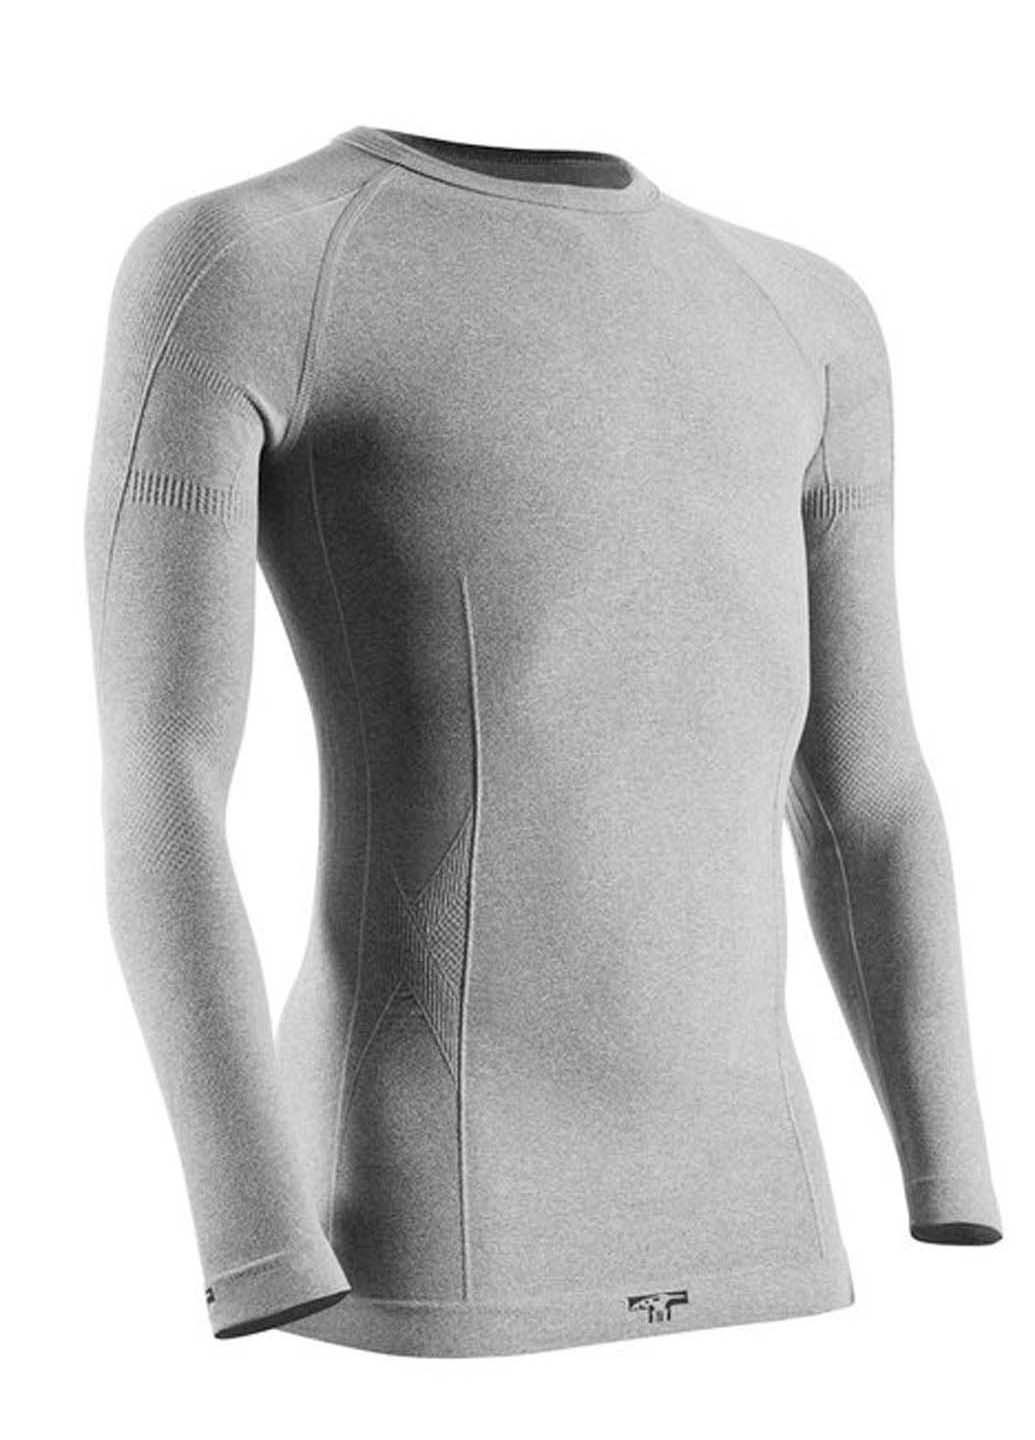 Комплект термобелья Tervel свитер + брюки однотонный серый спортивный